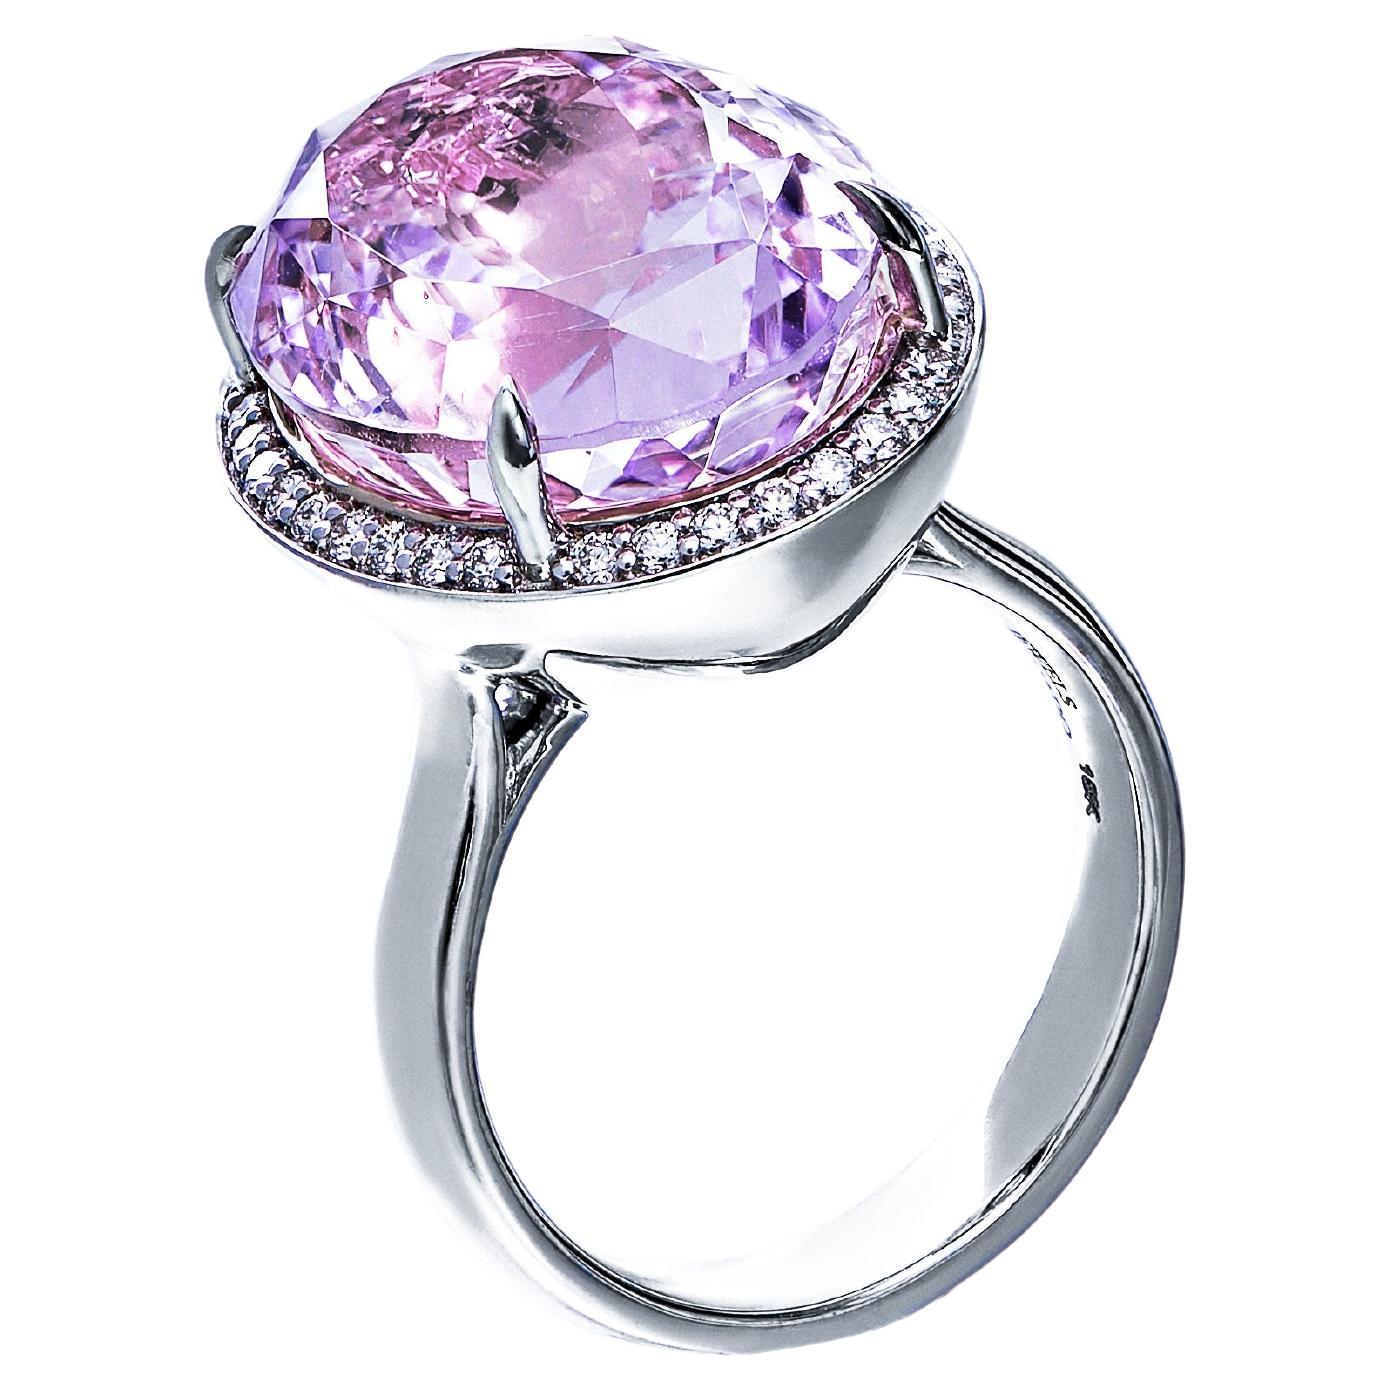 Wir präsentieren unseren faszinierenden Solitär-Kunzit-Diamant-Halo-Ring, ein atemberaubendes Symbol für Eleganz und Anmut. Dieser exquisite Ring besticht durch einen Kunzit im Ovalschliff, der von einem Halo aus kleinen Diamanten umgeben ist. Er